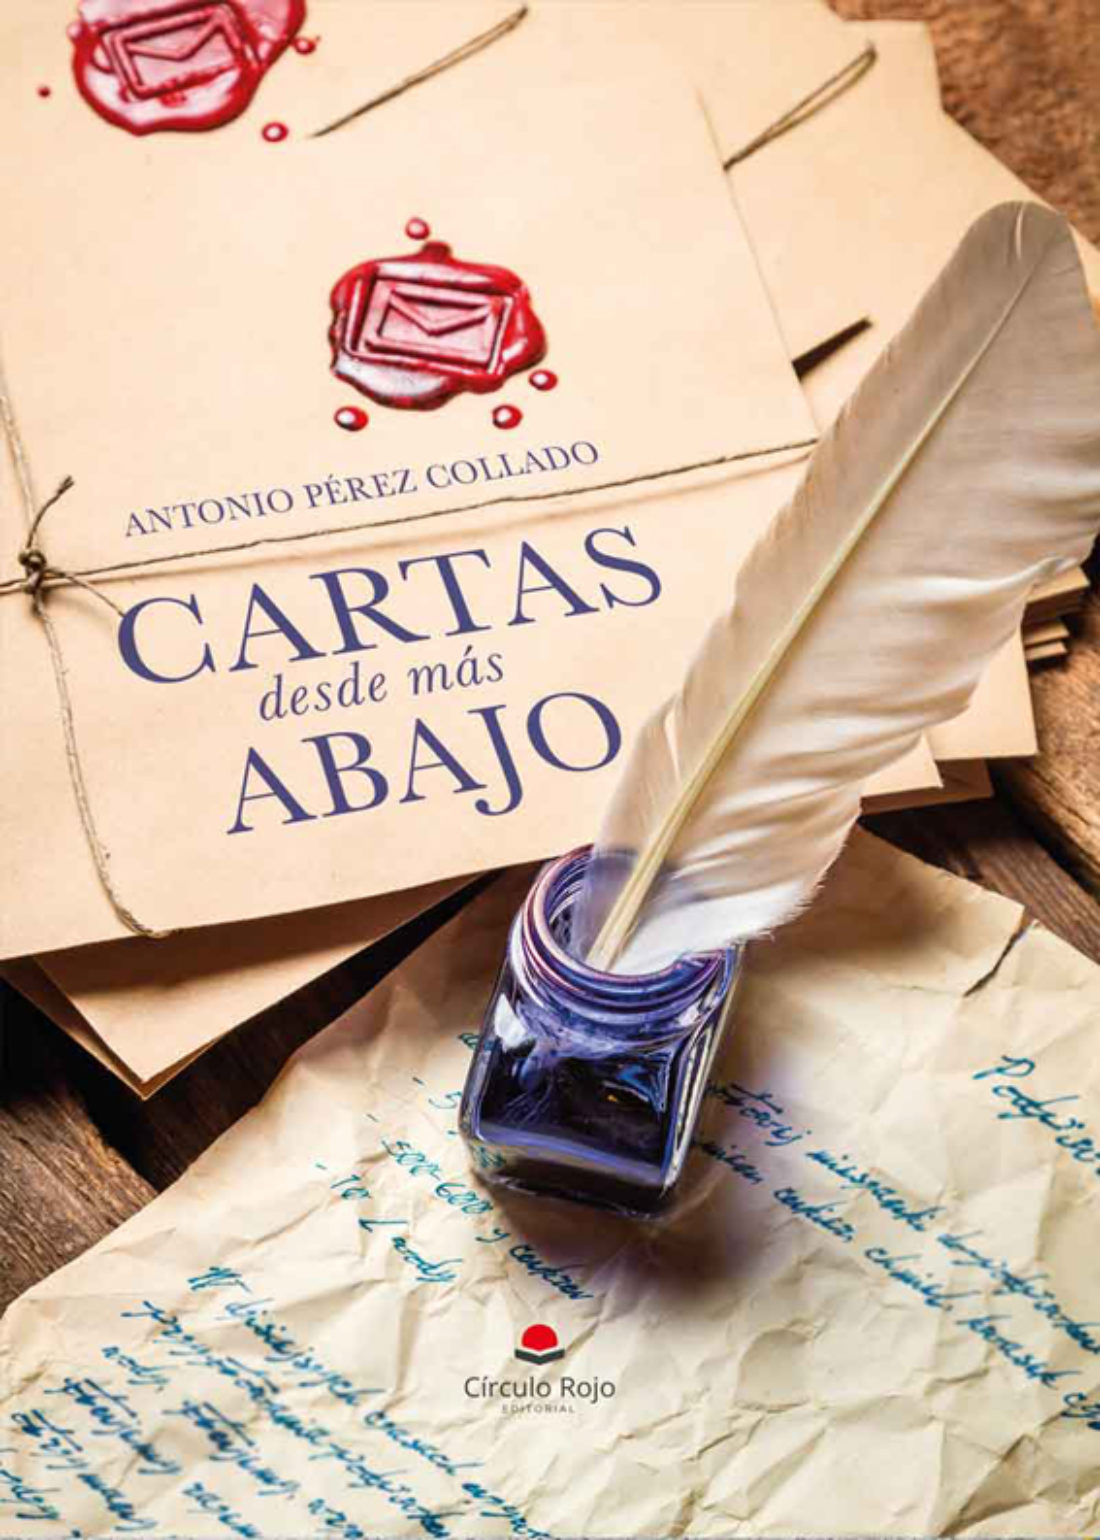 27-S: Presentación del libro “Cartas desde más abajo” en la Biblioteca de CGT-Valencia